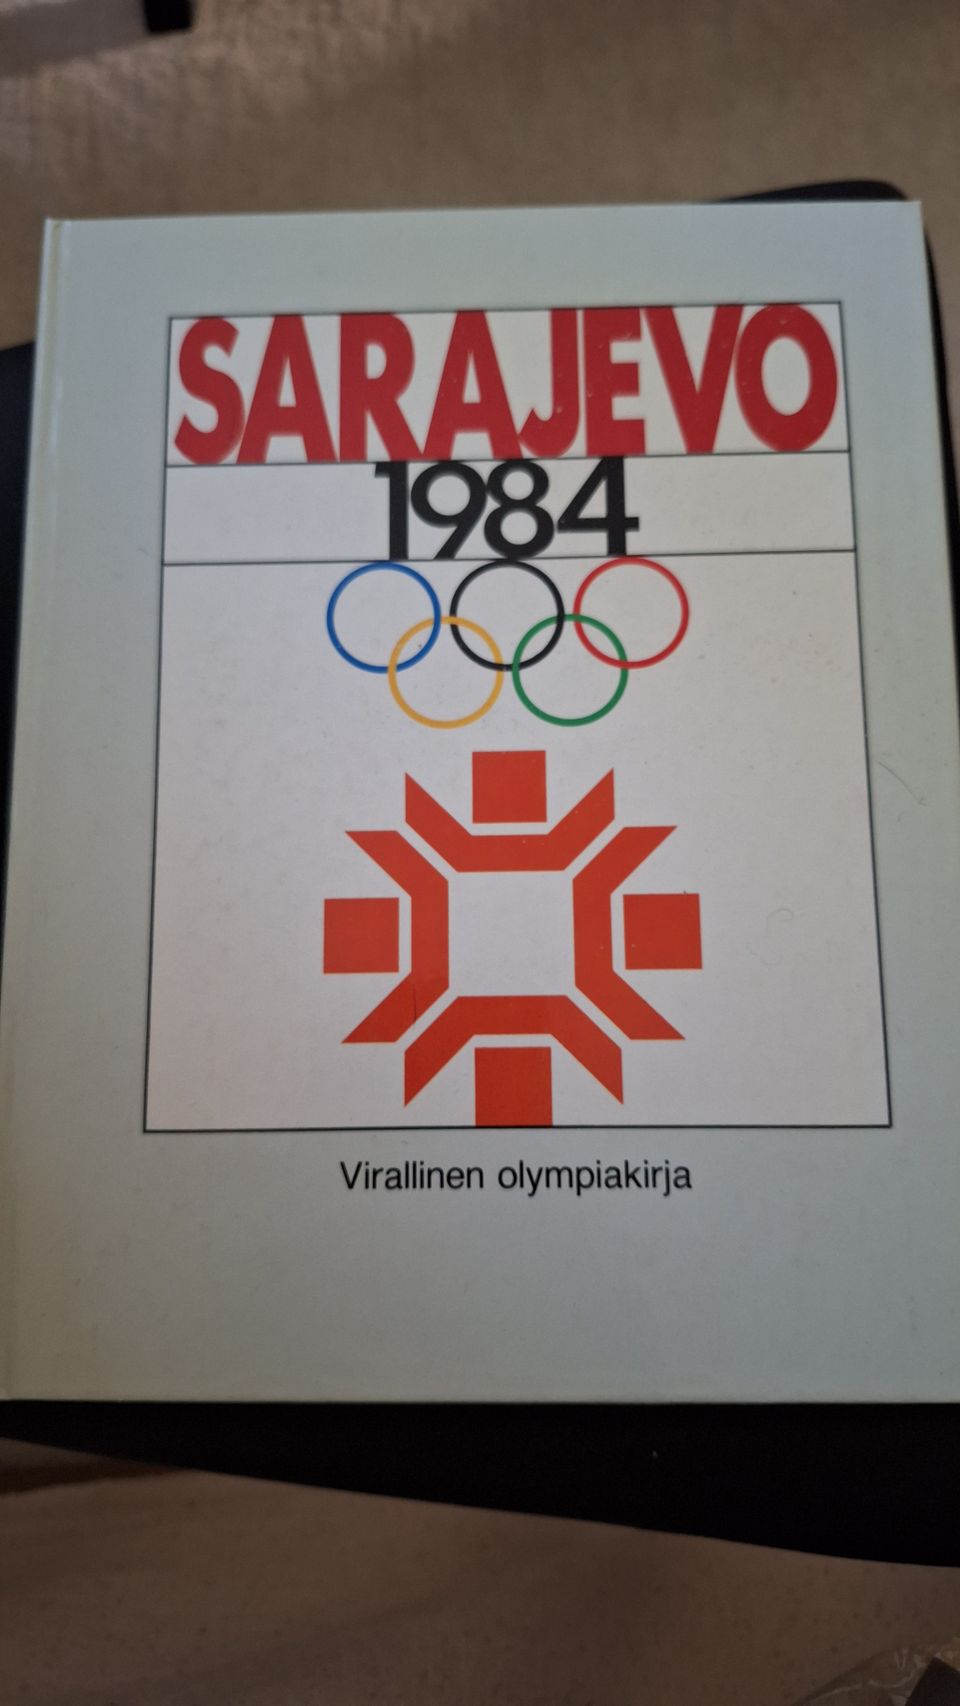 Sarajevo 1984 virallinen olympiakirja